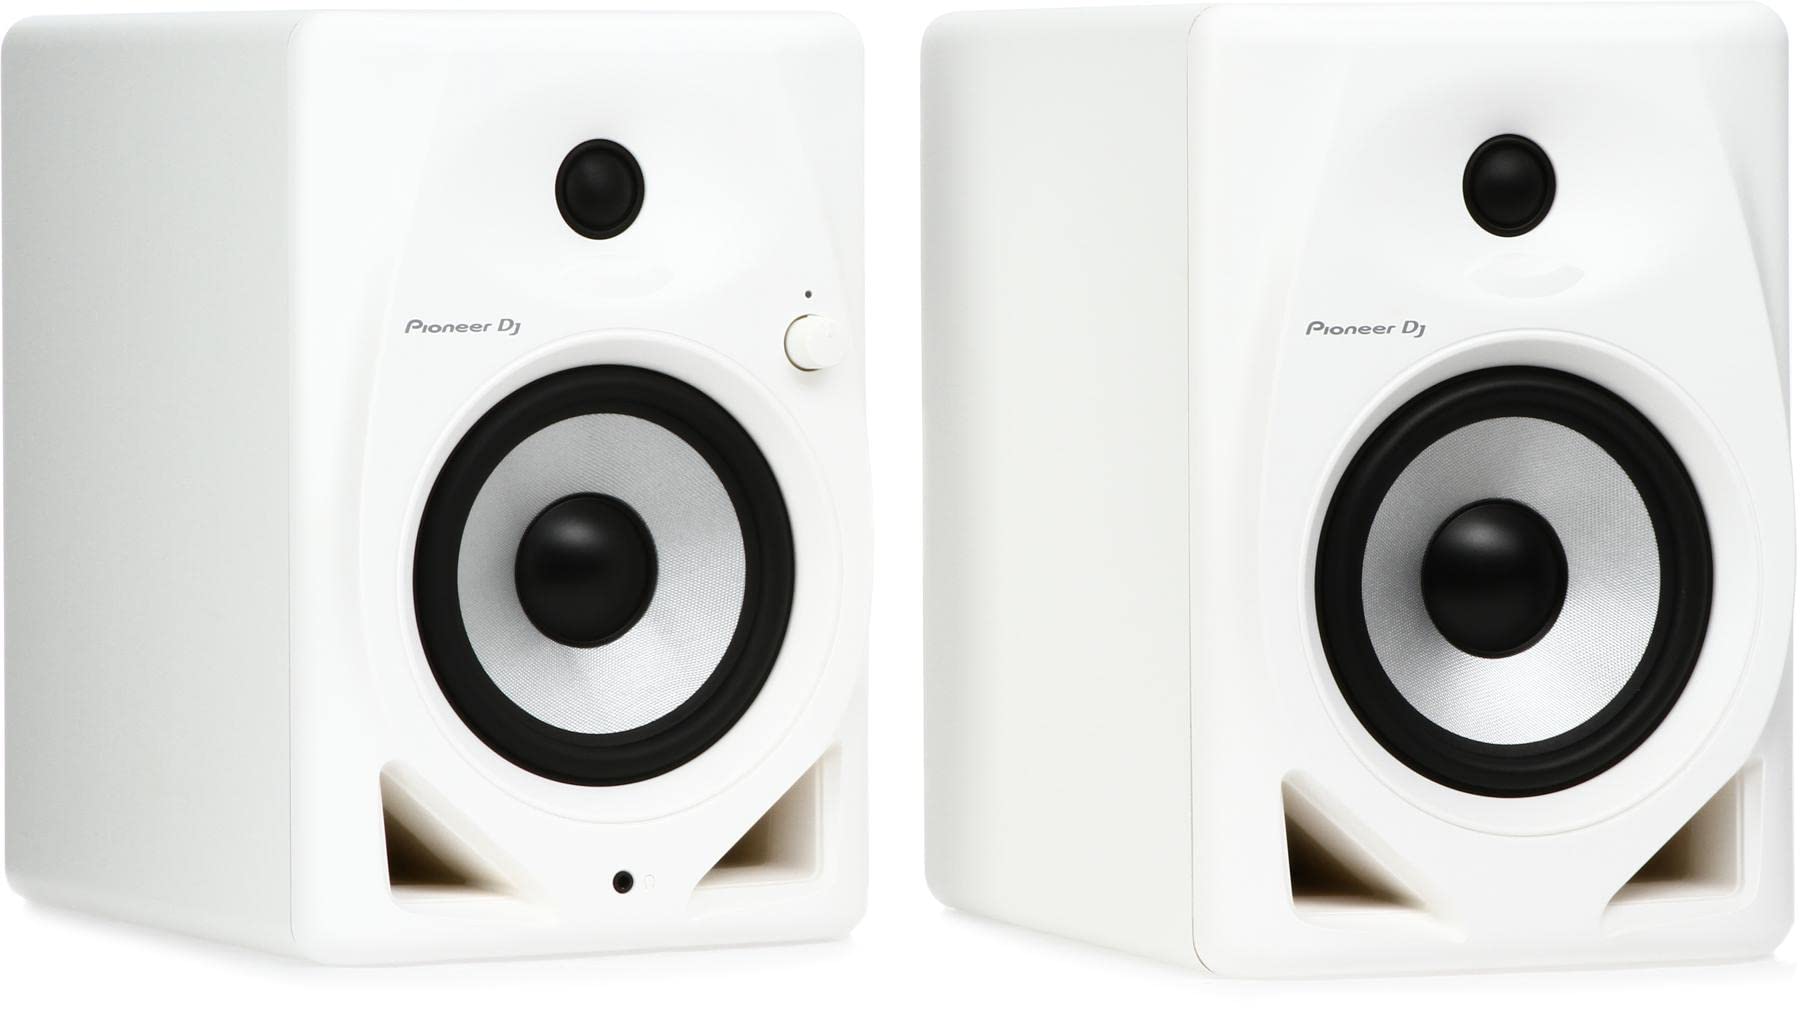 Pioneer DJ Alto-falante ativo para monitor DM-50D de 5 polegadas - branco